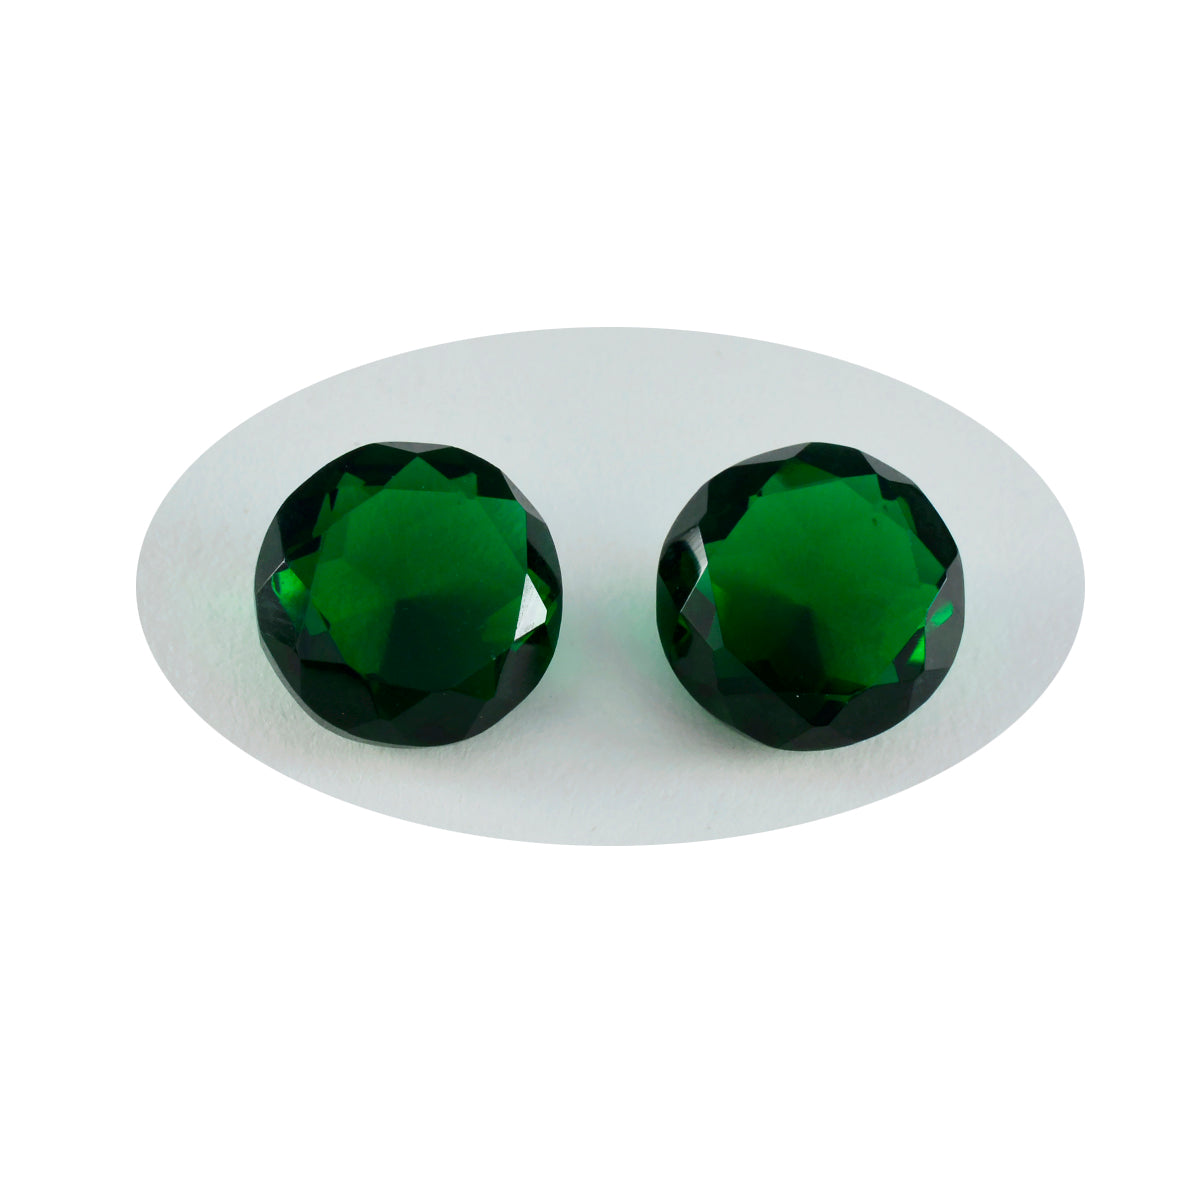 riyogems 1pc グリーン エメラルド CZ ファセット 13x13 mm ラウンド形状の素晴らしい品質の宝石